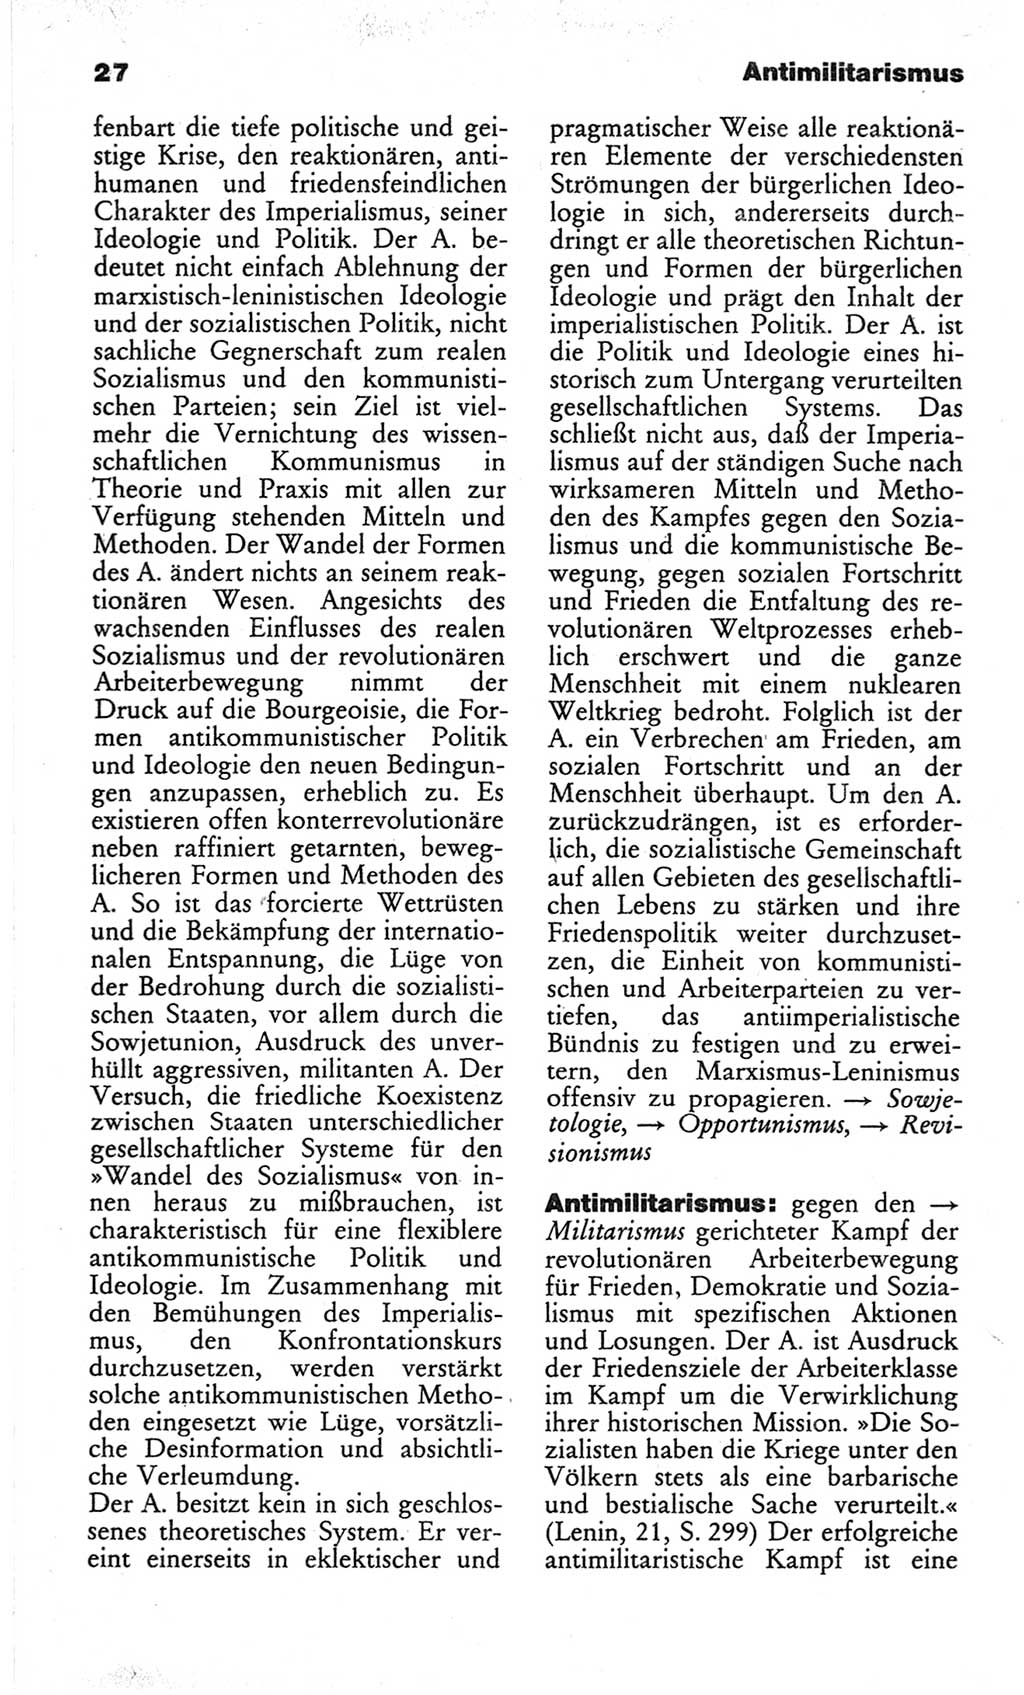 Wörterbuch des wissenschaftlichen Kommunismus [Deutsche Demokratische Republik (DDR)] 1982, Seite 27 (Wb. wiss. Komm. DDR 1982, S. 27)